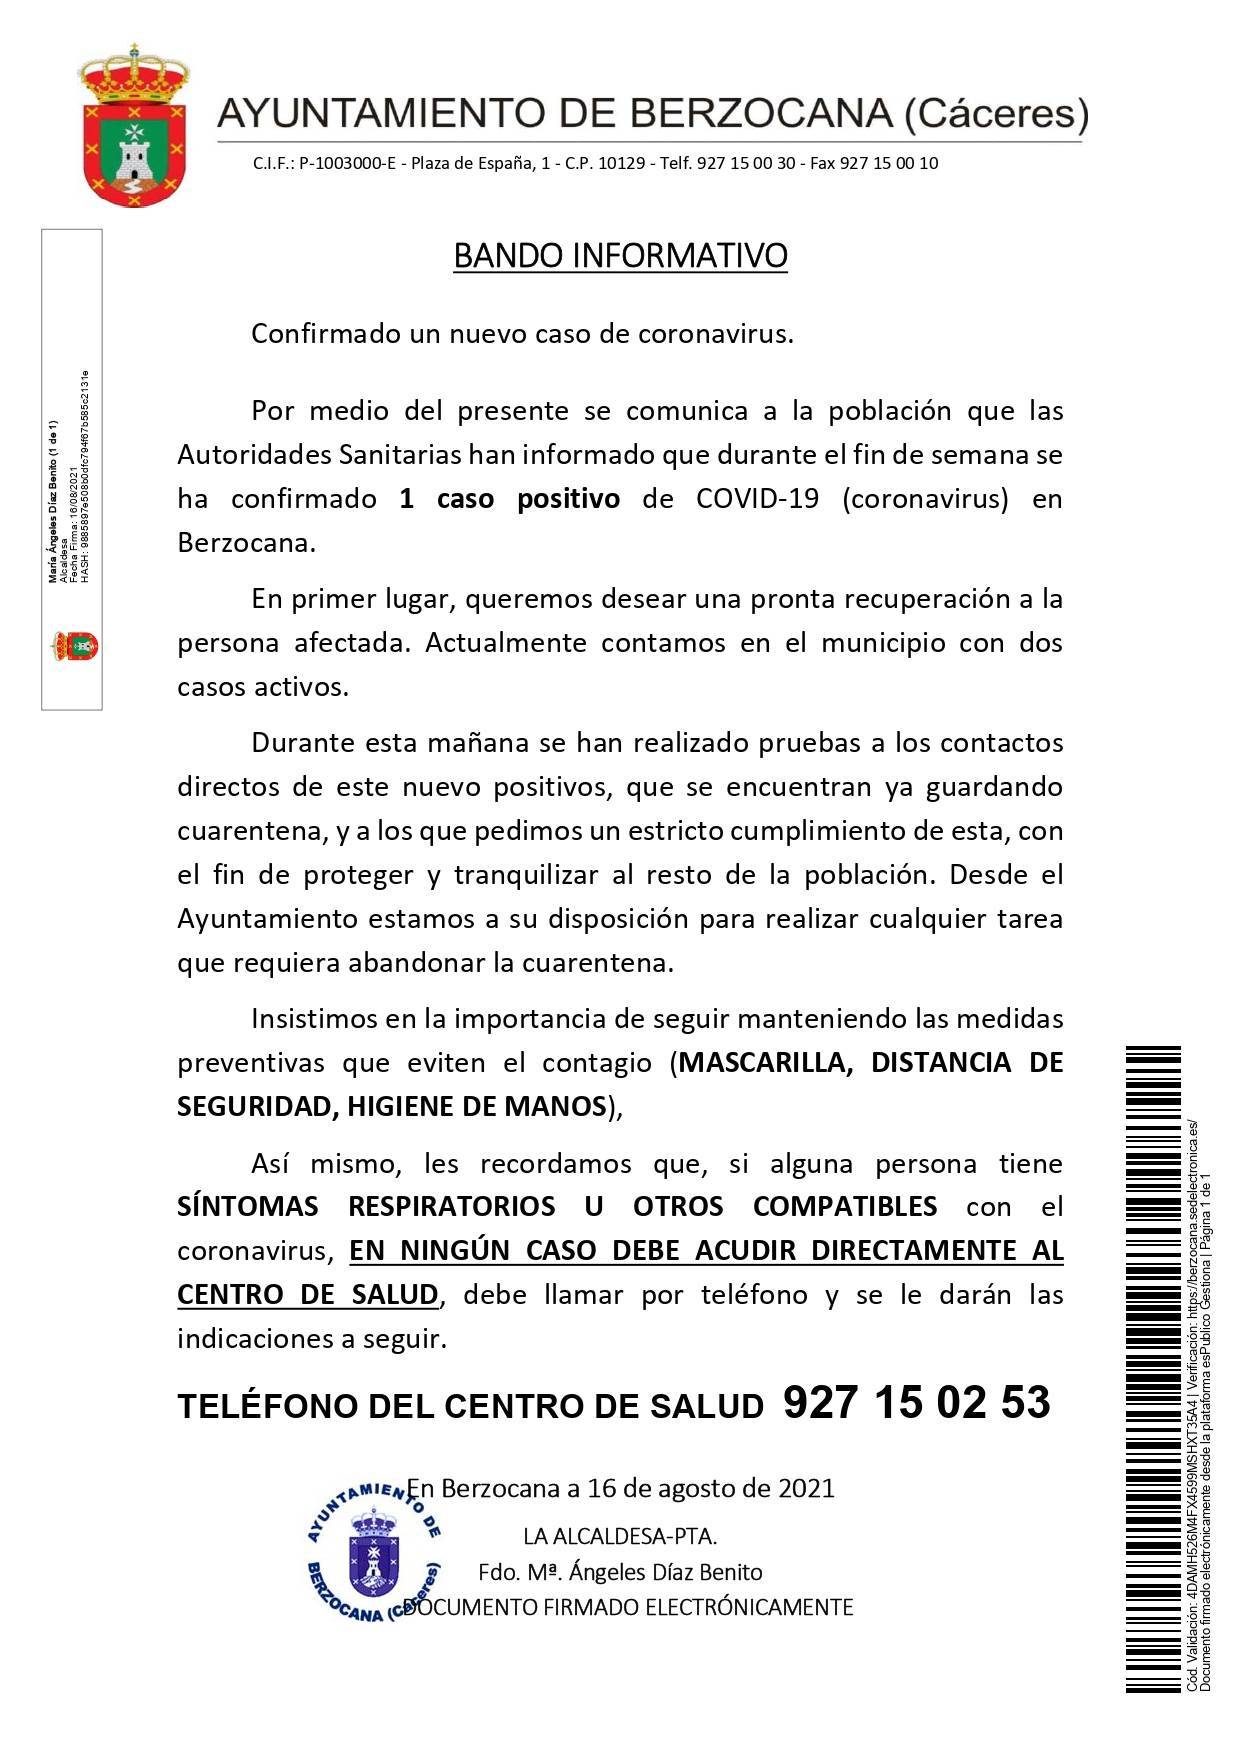 2 casos positivos activos de COVID-19 (agosto 2021) - Berzocana (Cáceres)